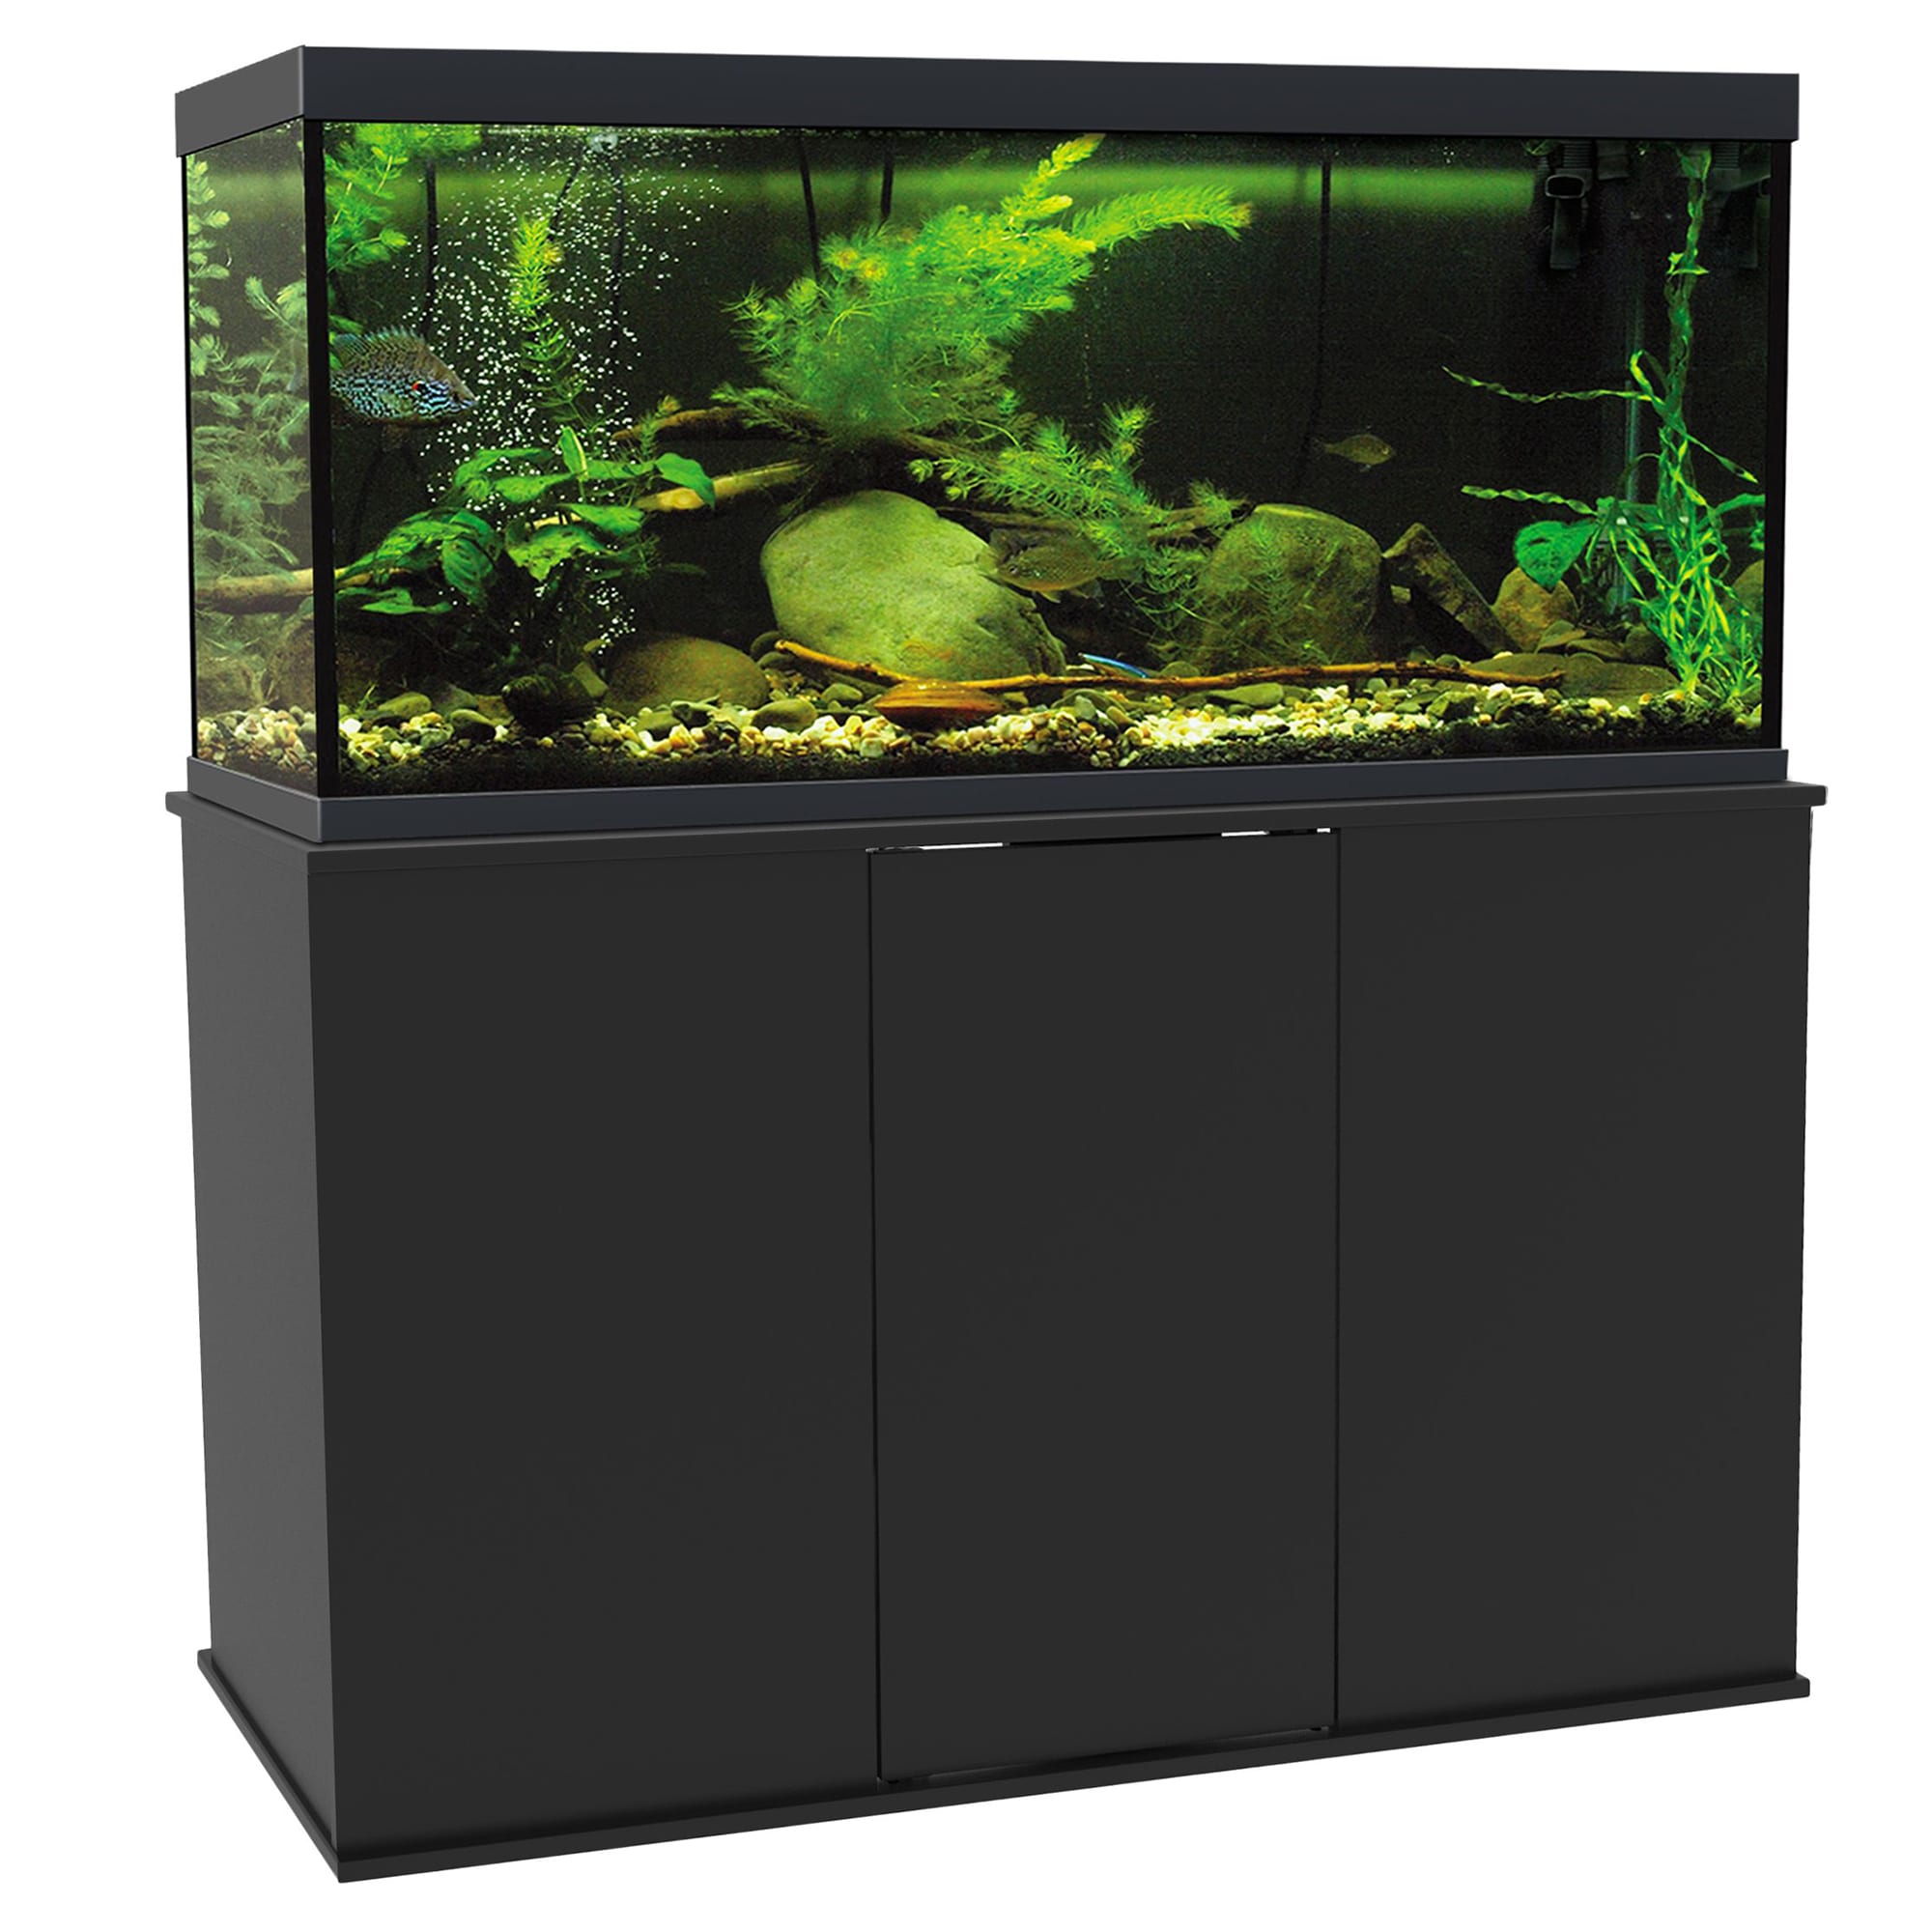 Aquatic Fundamentals Black Upright Aquarium Stand, 75-90 Gallon